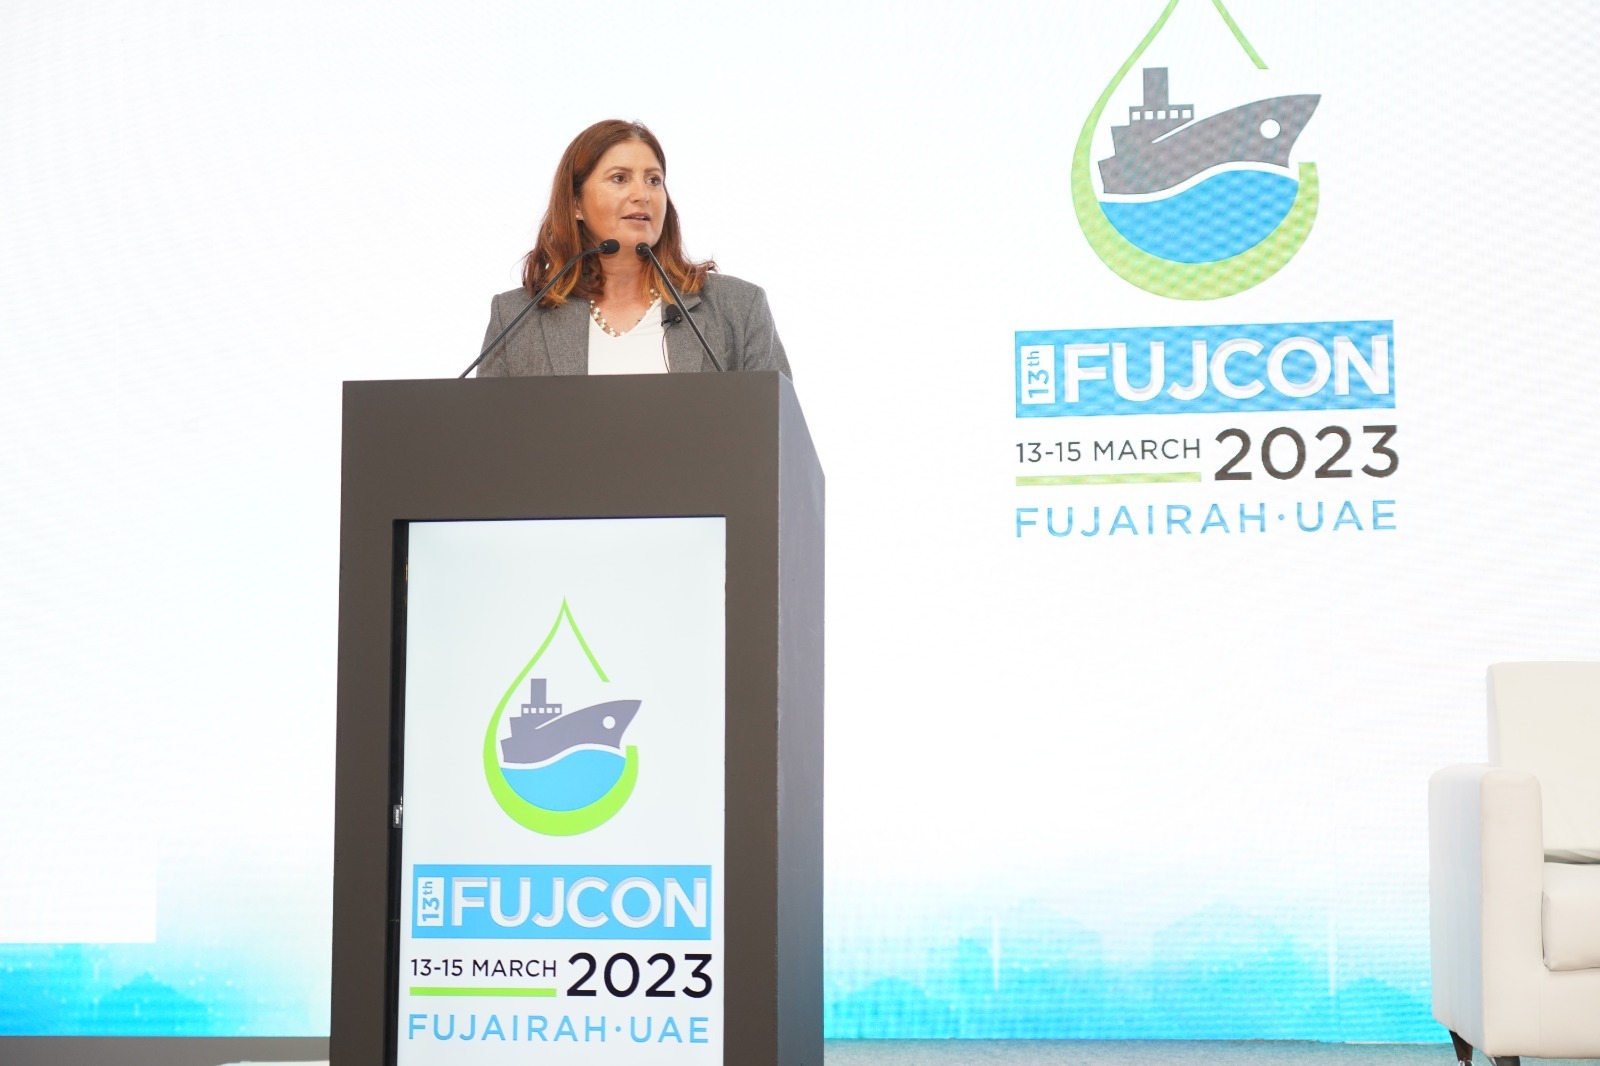 "فيشت وشركاه" تطلق حوارًا حول التحديات القانونية في القطاع البحري خلال ملتقى فوجكون  2023